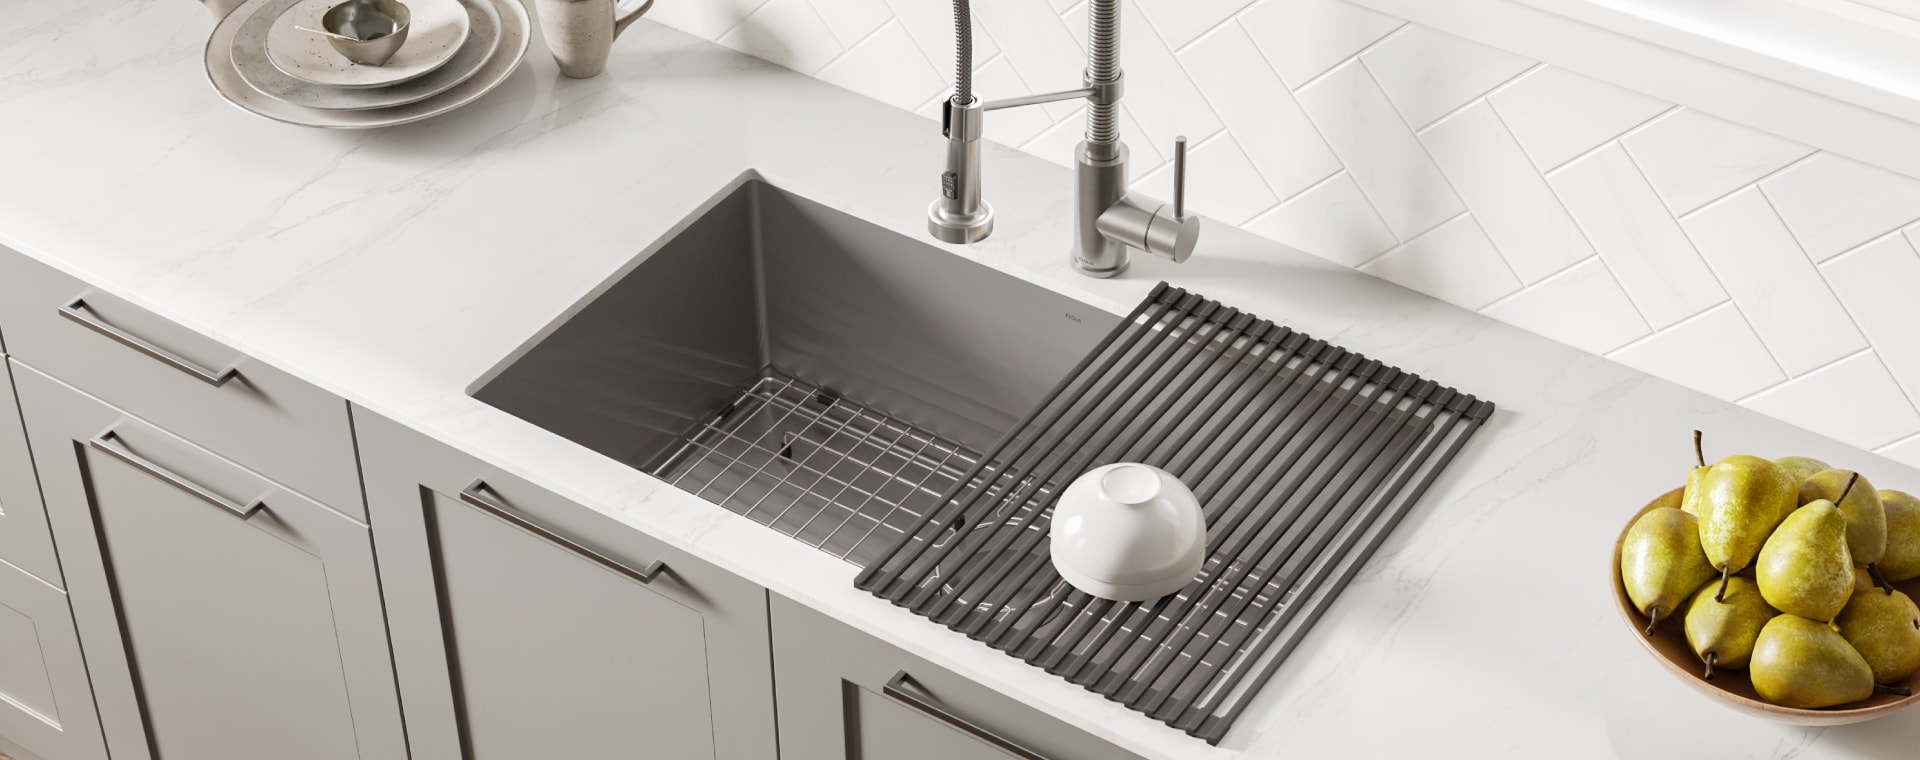 Top 5 Kitchen Sink Materials Sinkology